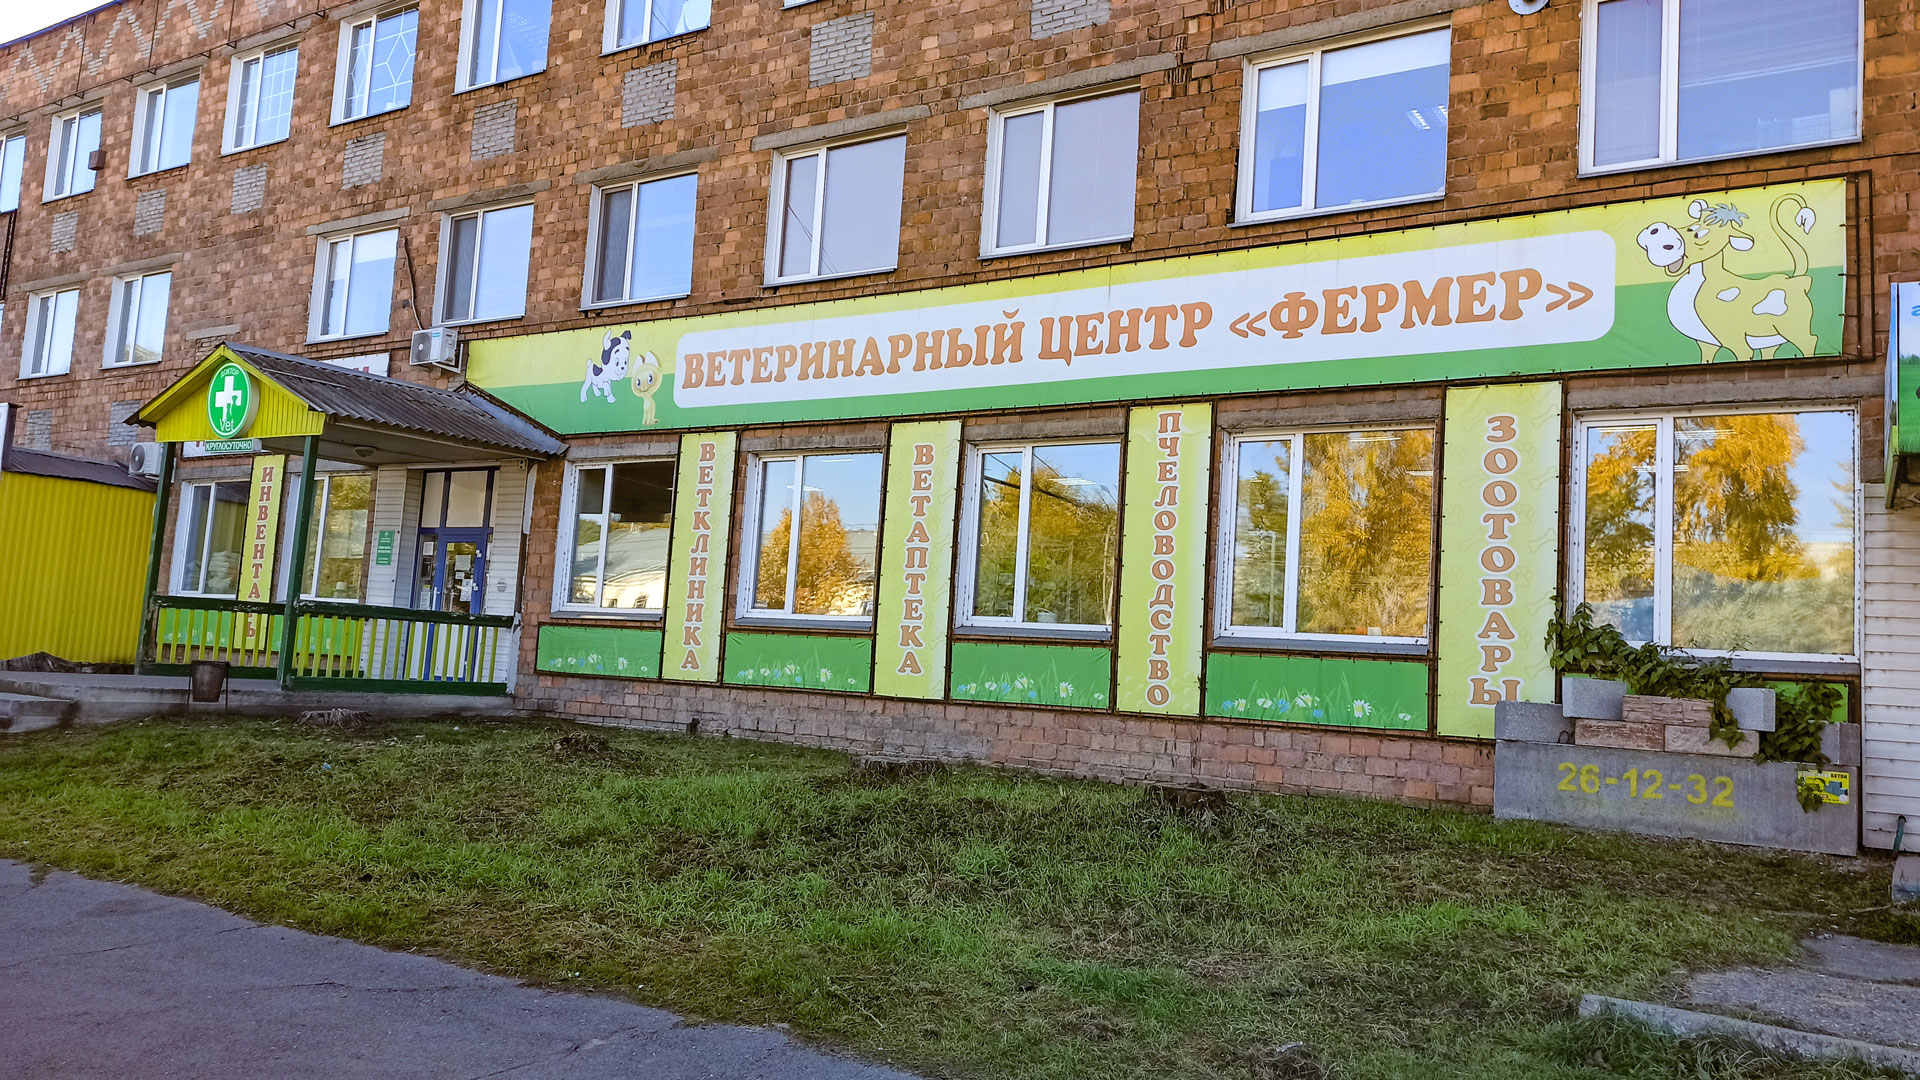 Ветеринарная клиника "Доктор Vet" на ул. Пушкина в г. Абакан.